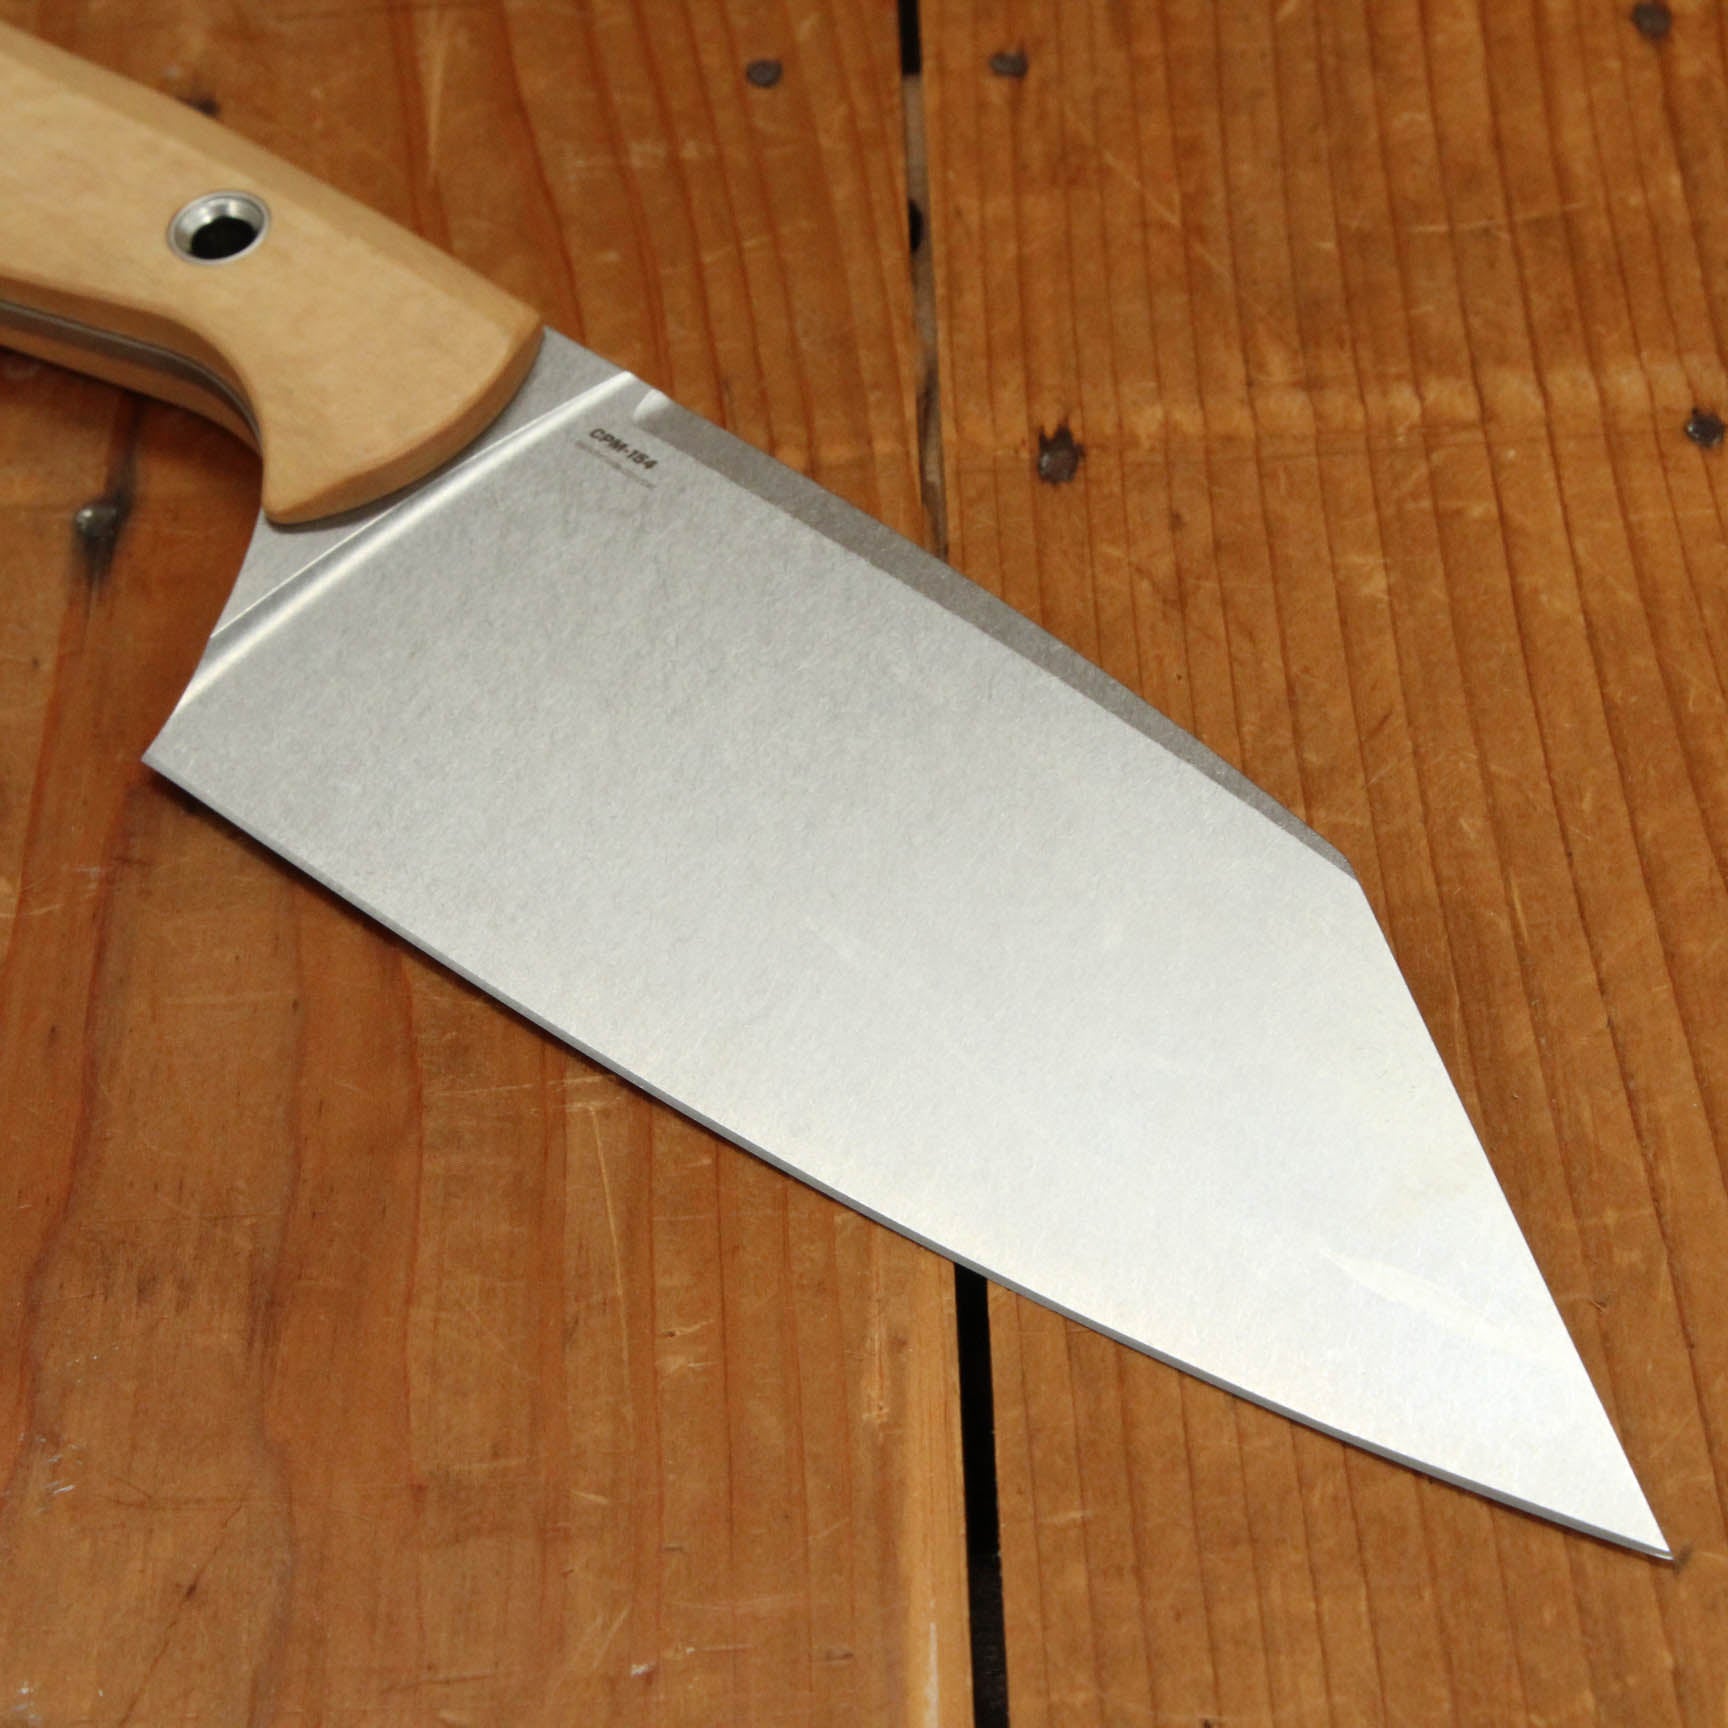 Benchmade Knife Company 3 Piece Maple Valley Knife Set Kitchen Knife